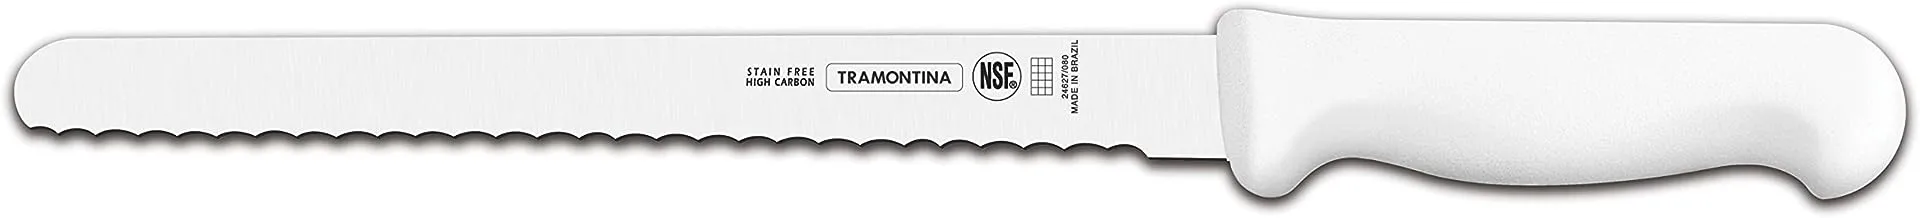 سكين لحم الخنزير الاحترافي من ترامونتينا مقاس 10 بوصات مع شفرة من الفولاذ المقاوم للصدأ ومقبض من البولي بروبيلين الأبيض